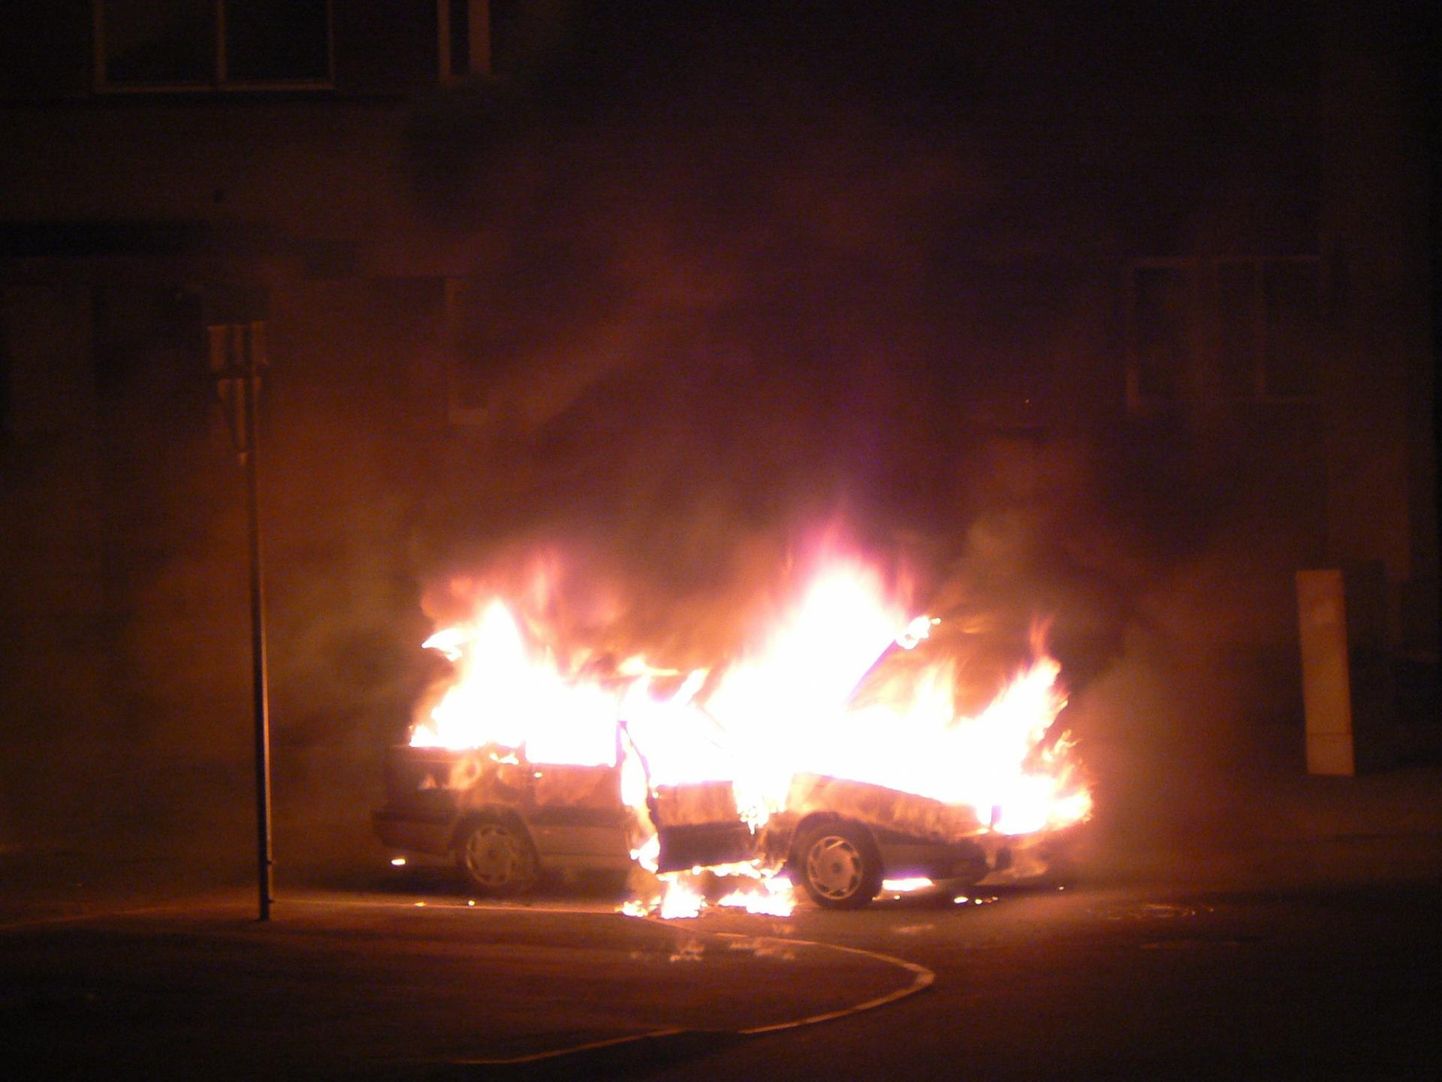 Täna öösel põles Pärnus Bauhofi ehitusmaterjalide kaupluse juures sõiduauto. Foto on illustreeriv.